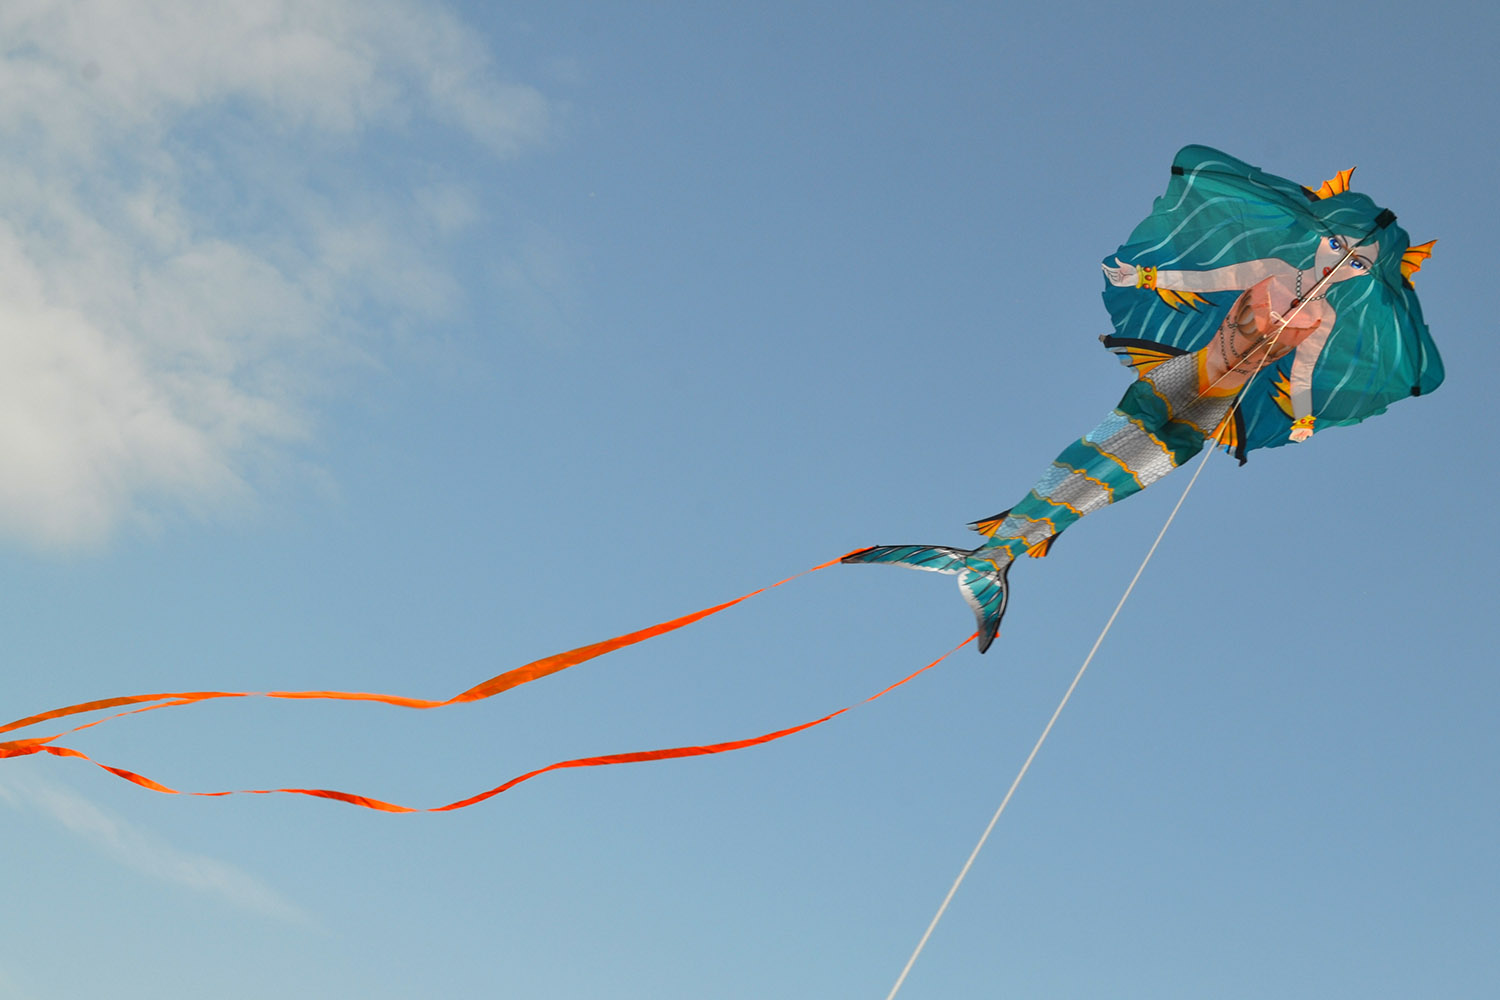 Парящая русалка, воздушный змей от ФКайт